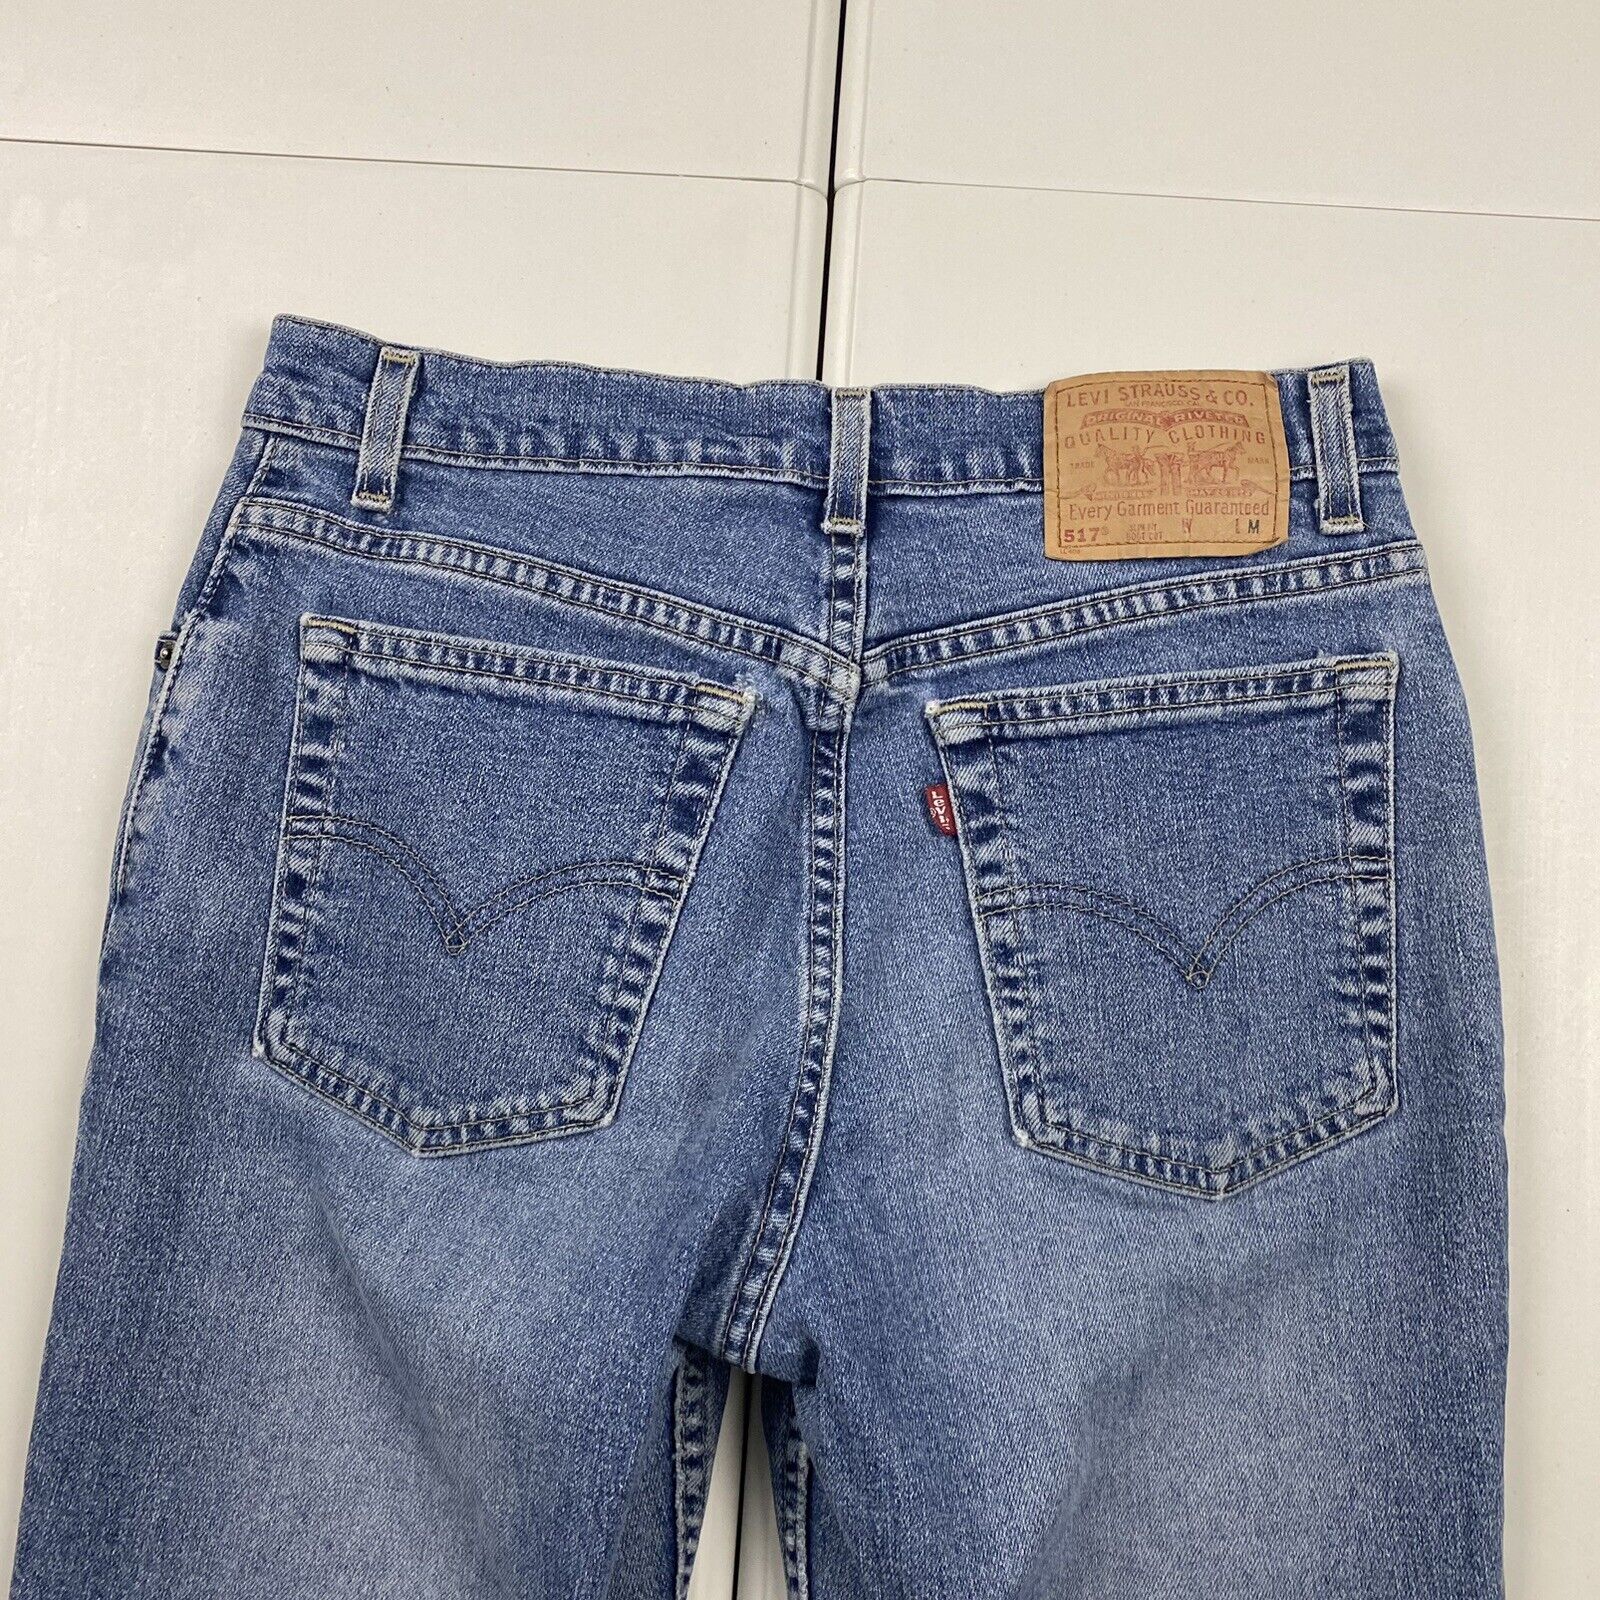 Vintage 90s Levi's 517 Slim Fit Boot Cut Denim Jeans … - Gem